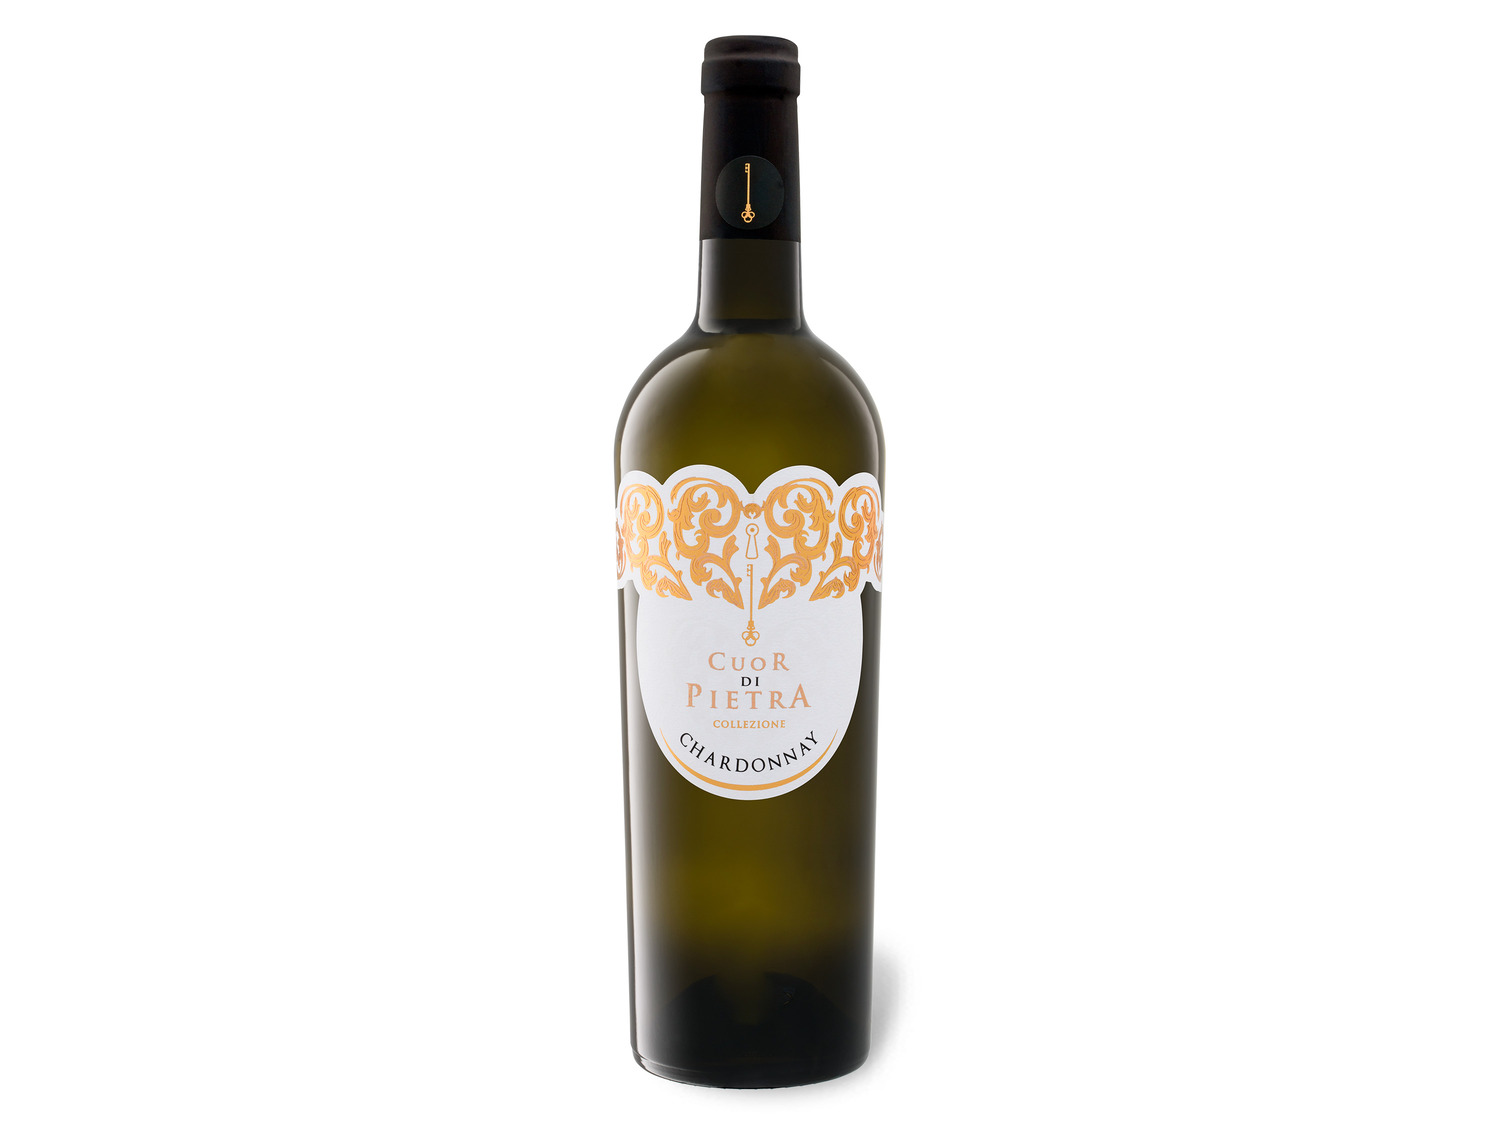 halbtrocken, Cuor Puglia Pietra di Chardonnay Weiß… IGT